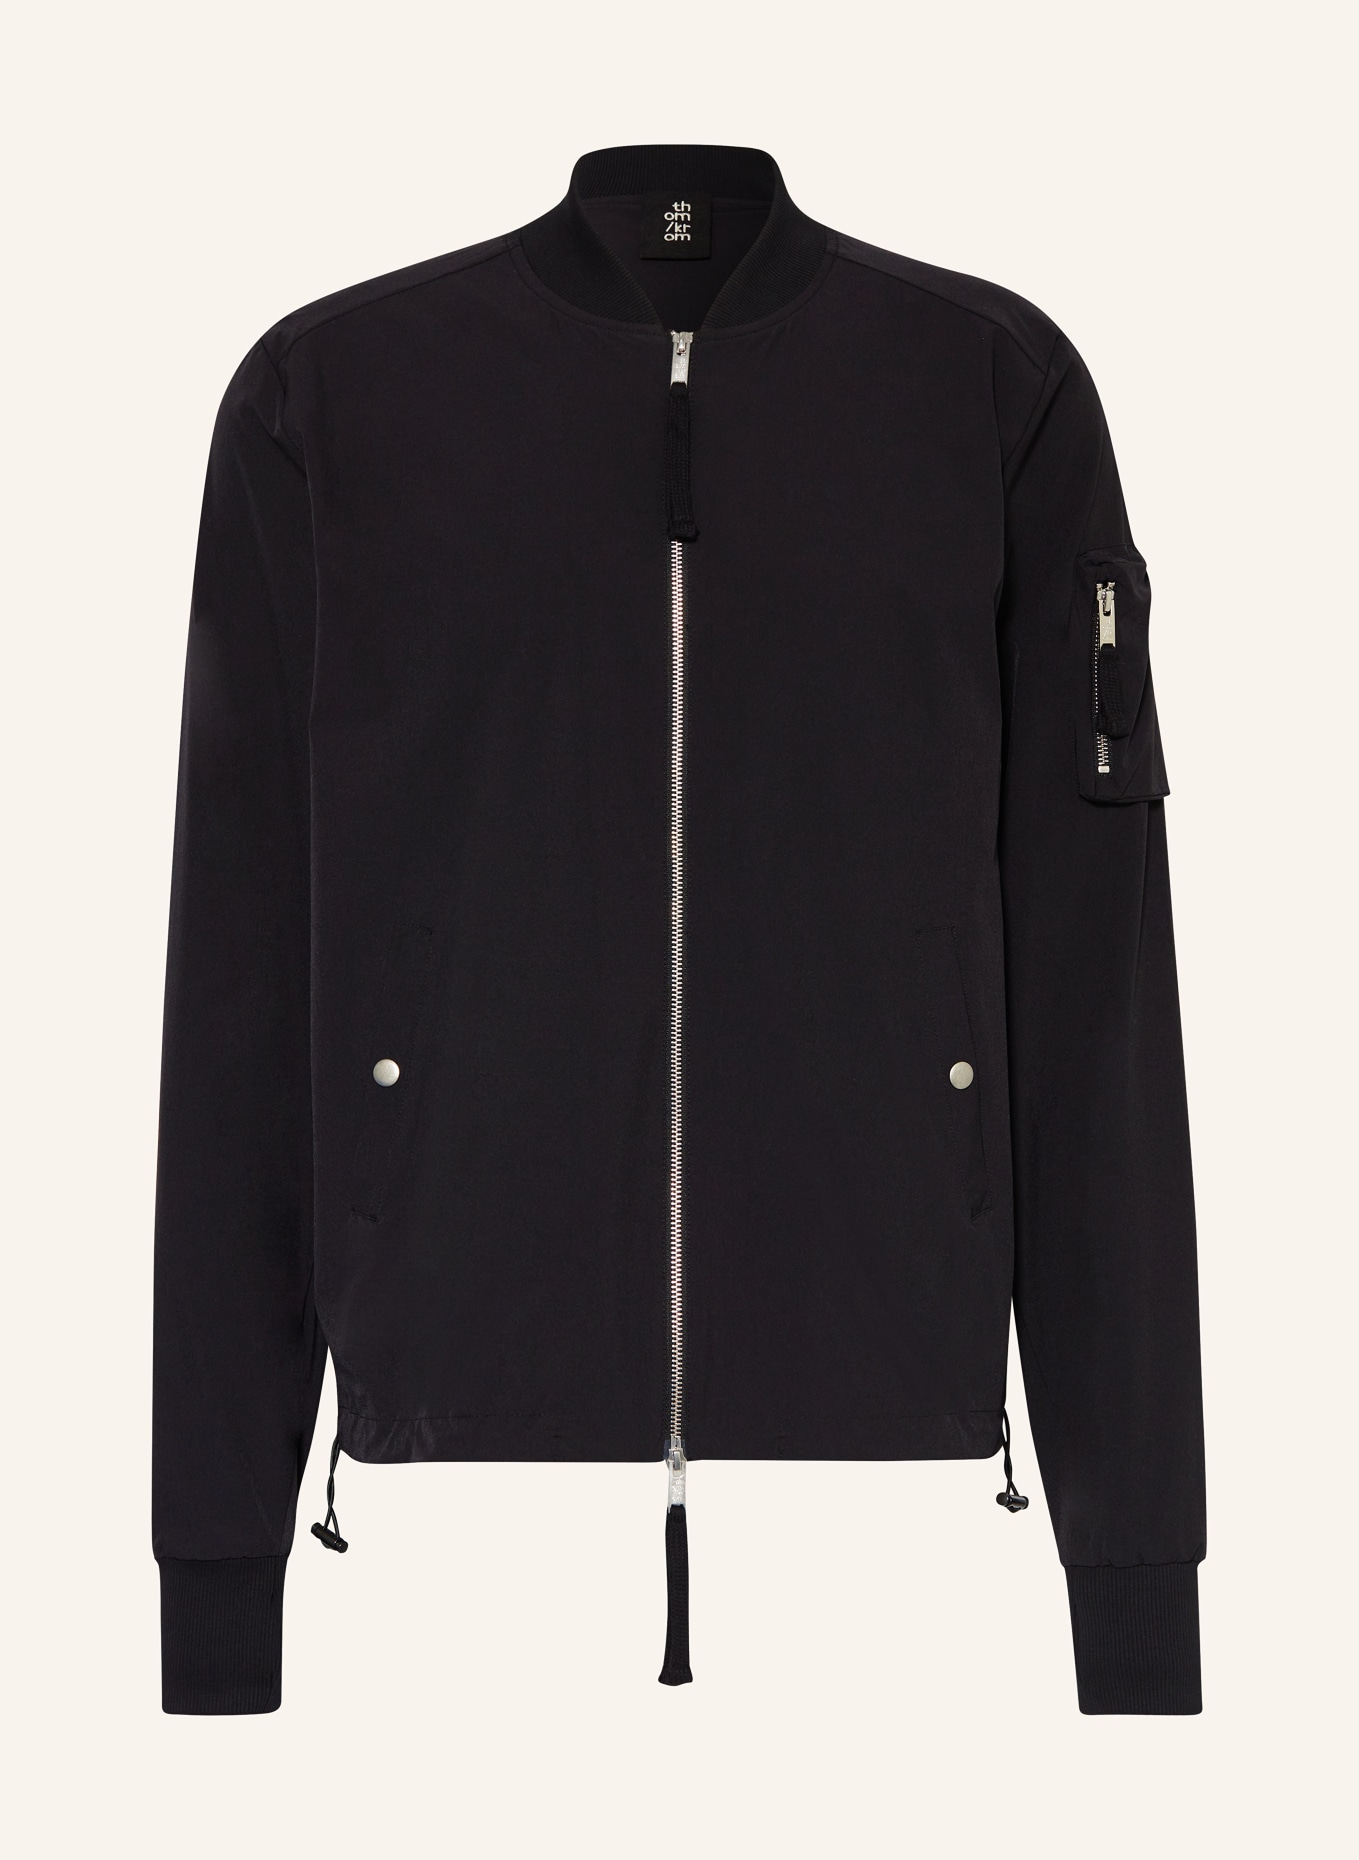 thom/krom Bomber jacket, Color: BLACK (Image 1)